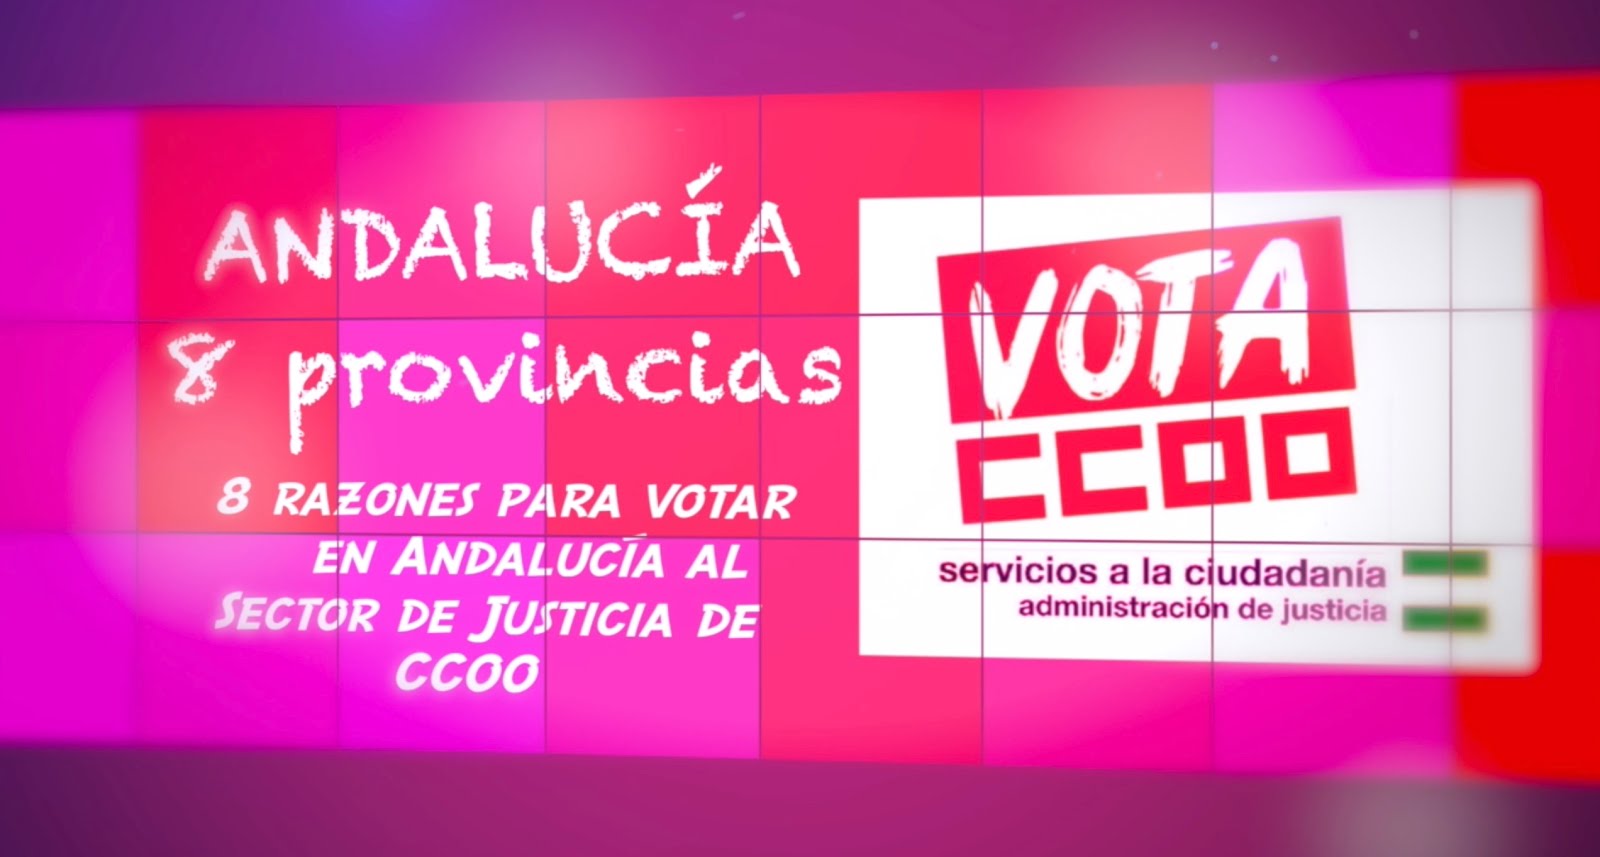 VIDEO ELECTORAL SECTOR DE JUSTICIA DE CCOO ANDALUCIA 2019